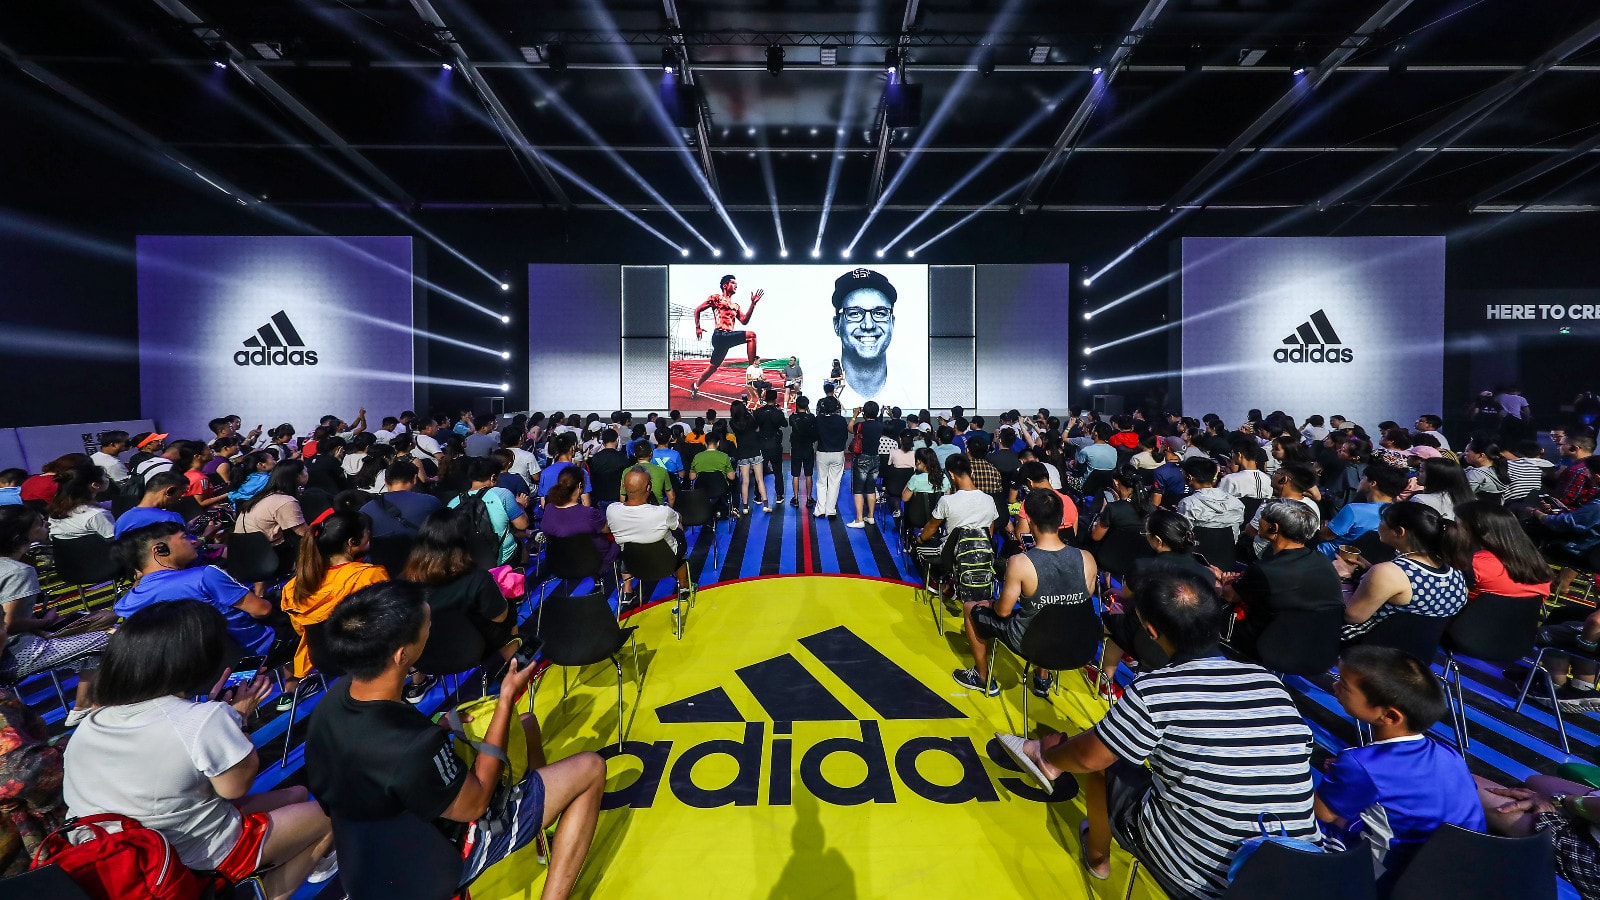 走進 adidas 先鋒制鞋體驗 SPEEDFACTORY上海站 TLKS 現場